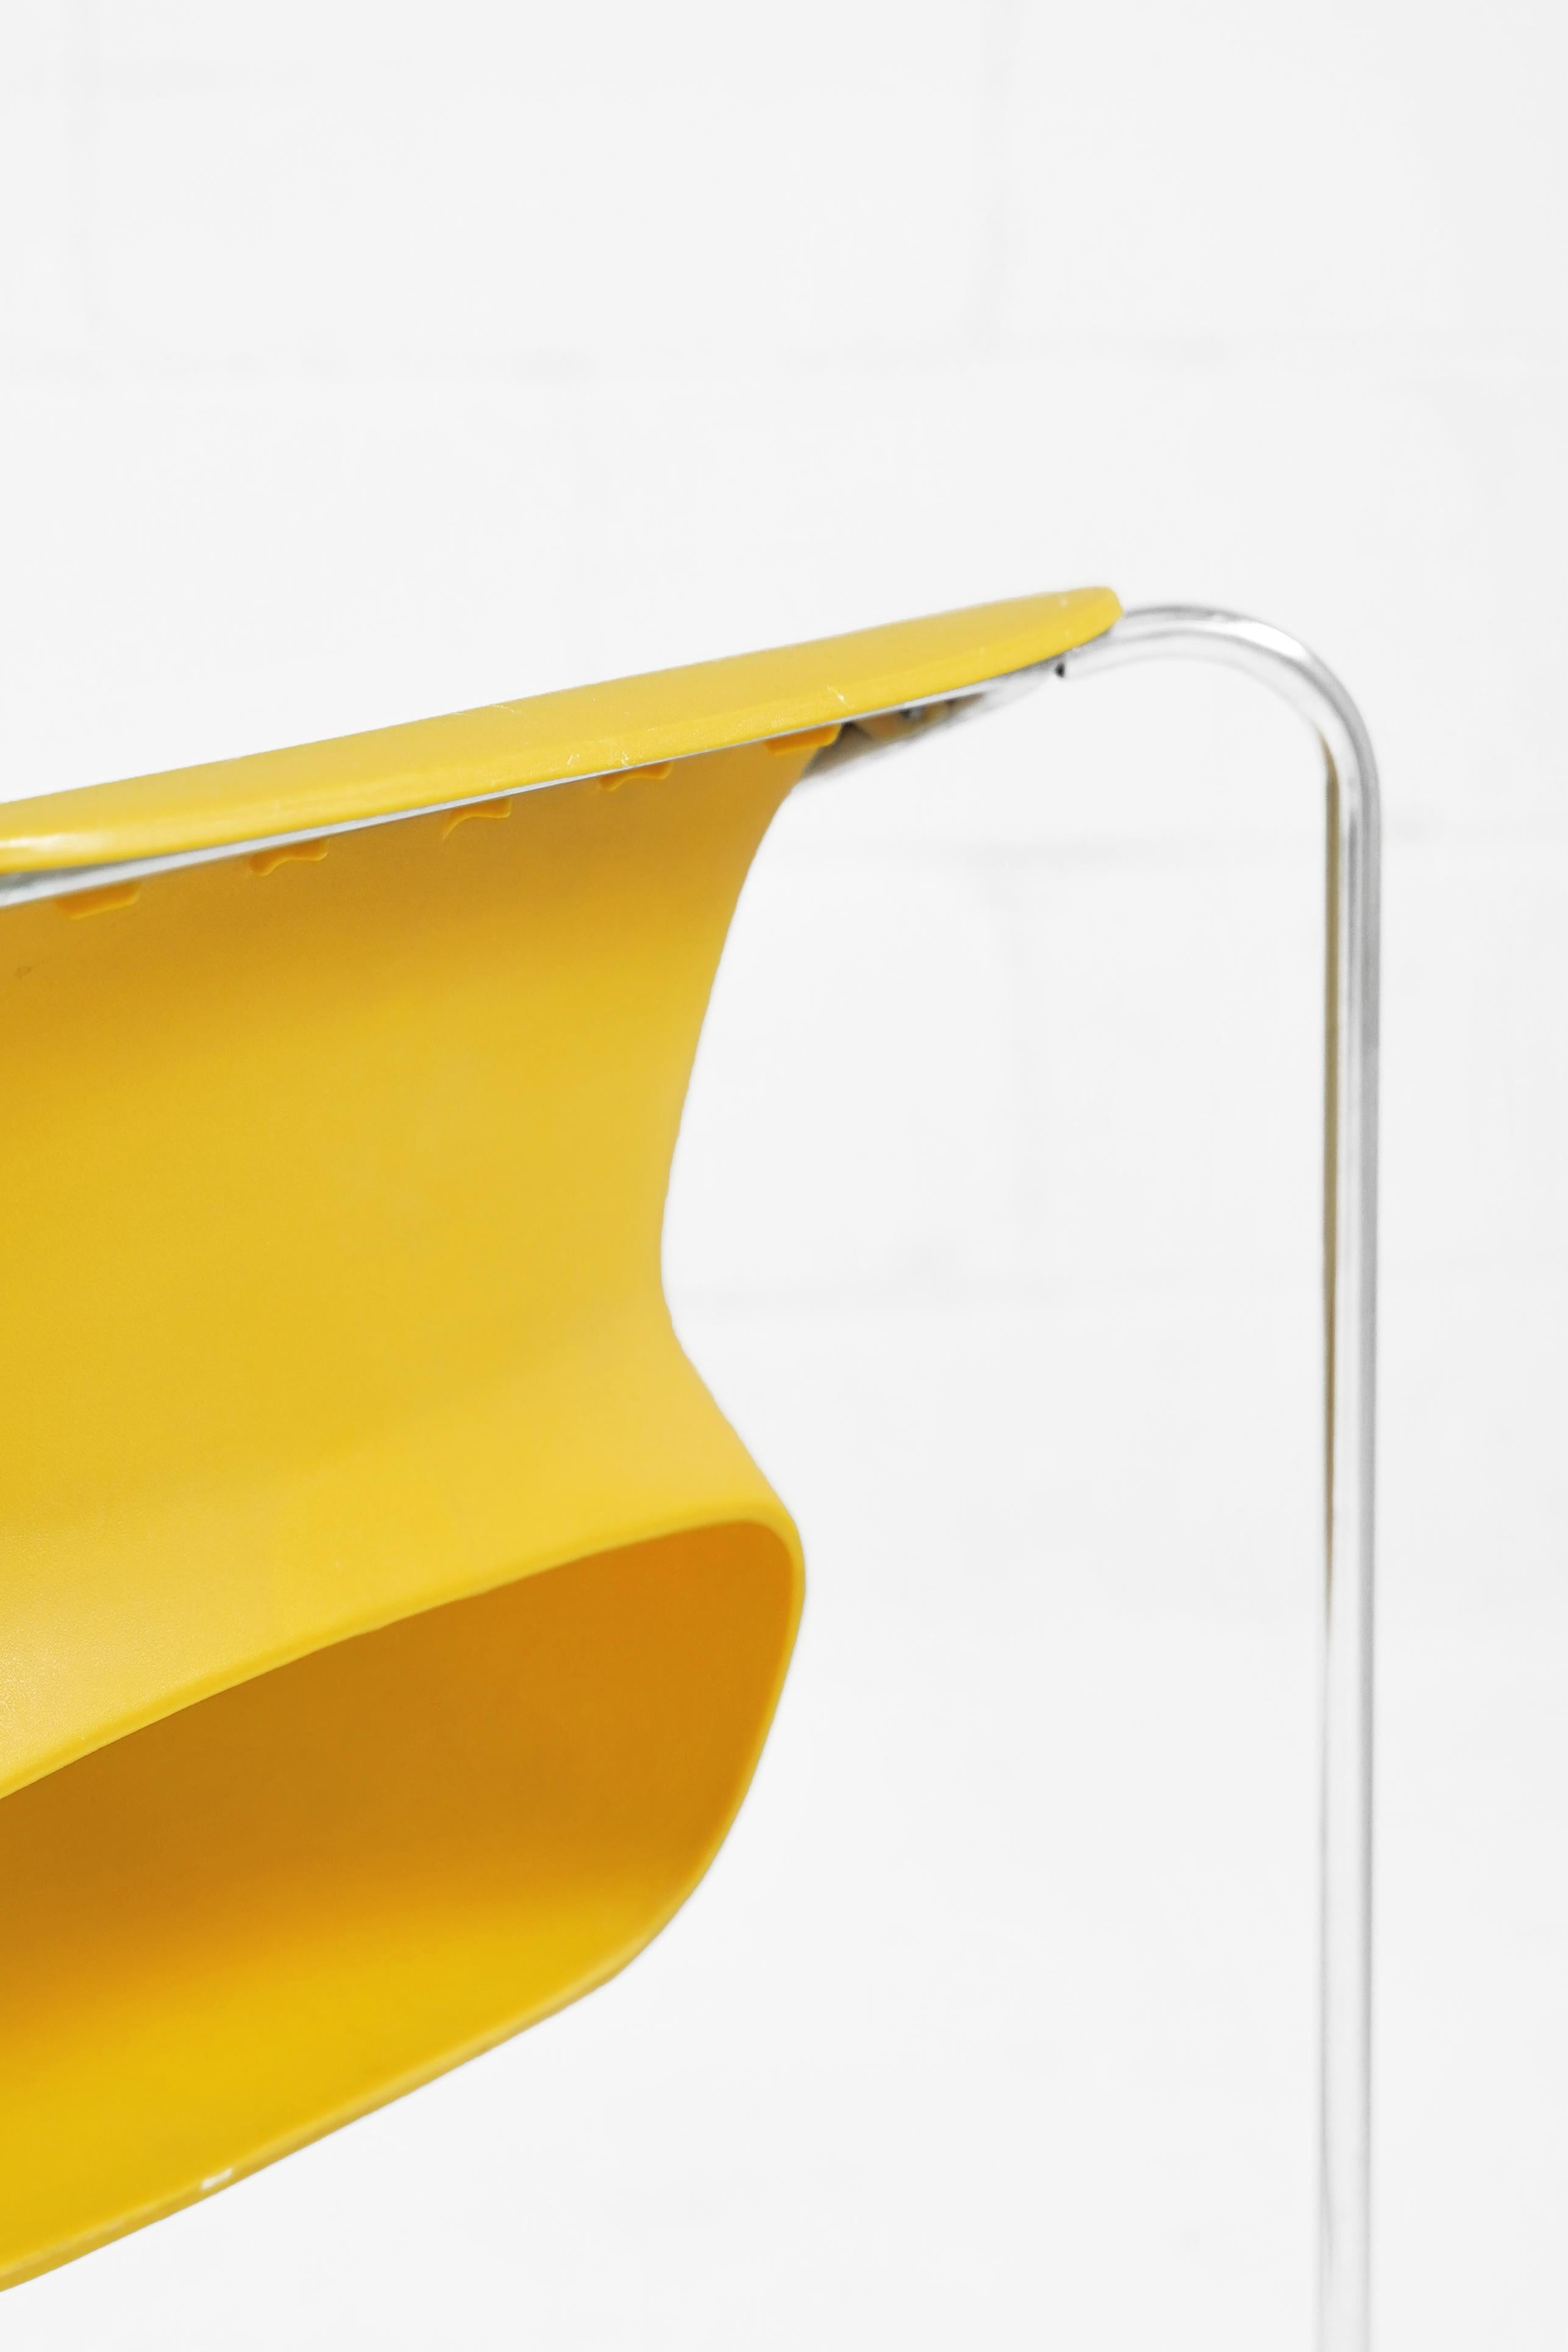 Européen Chaise Lotus en jaune par Paul Boulva pour Artopex